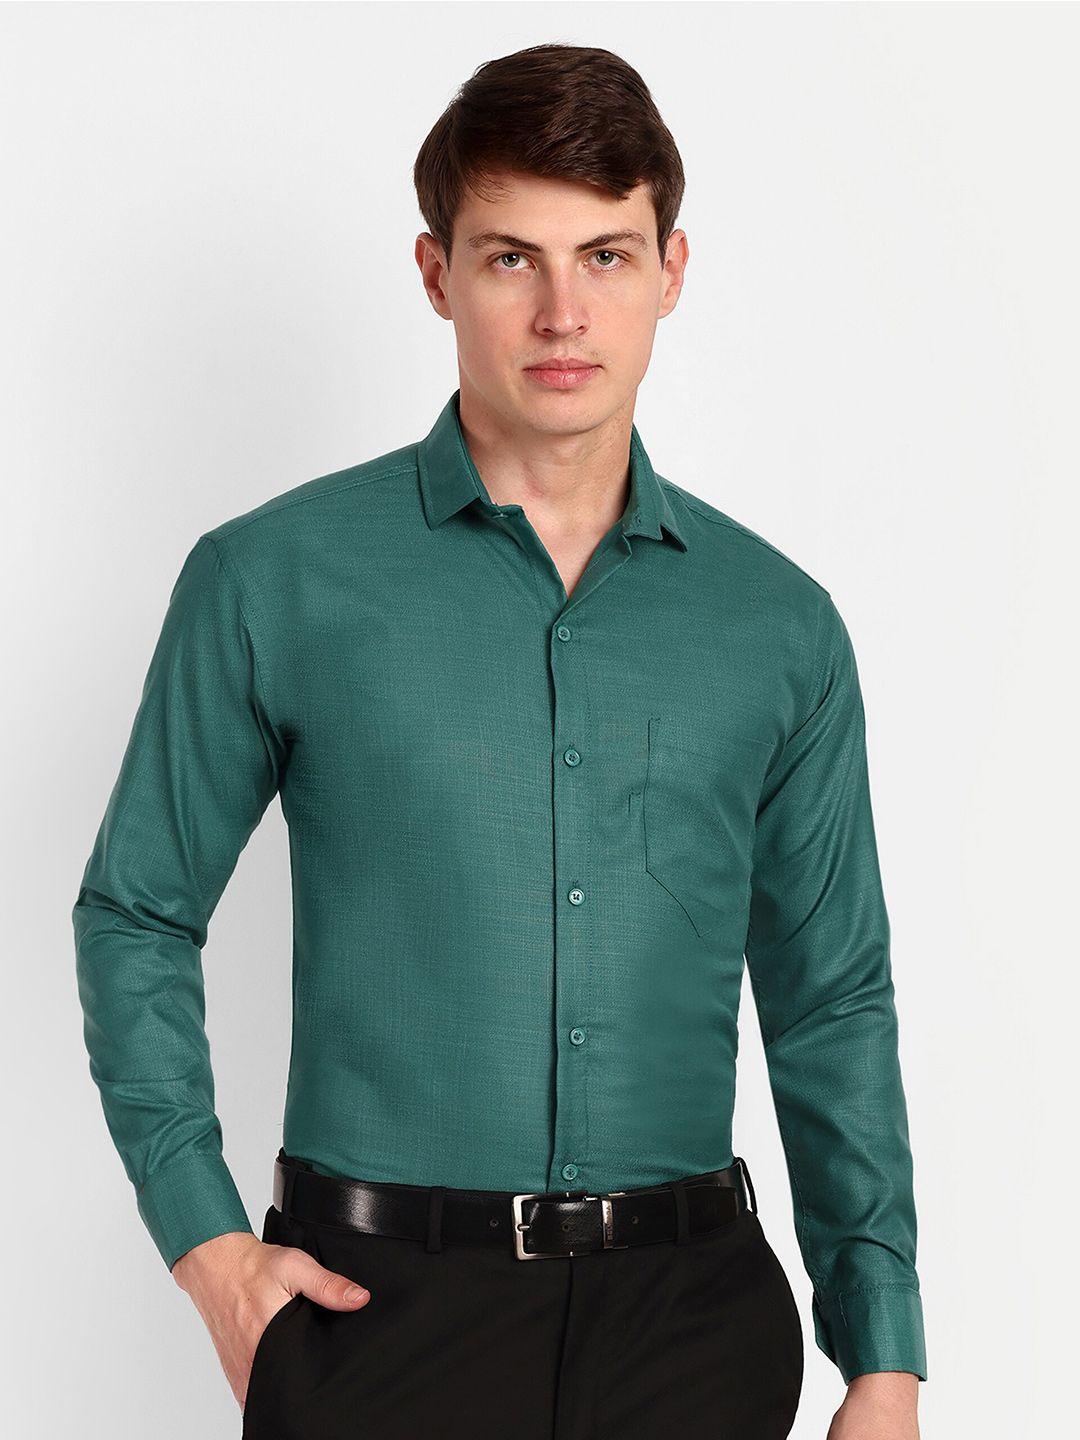 colorwings men green comfort semi sheer formal shirt